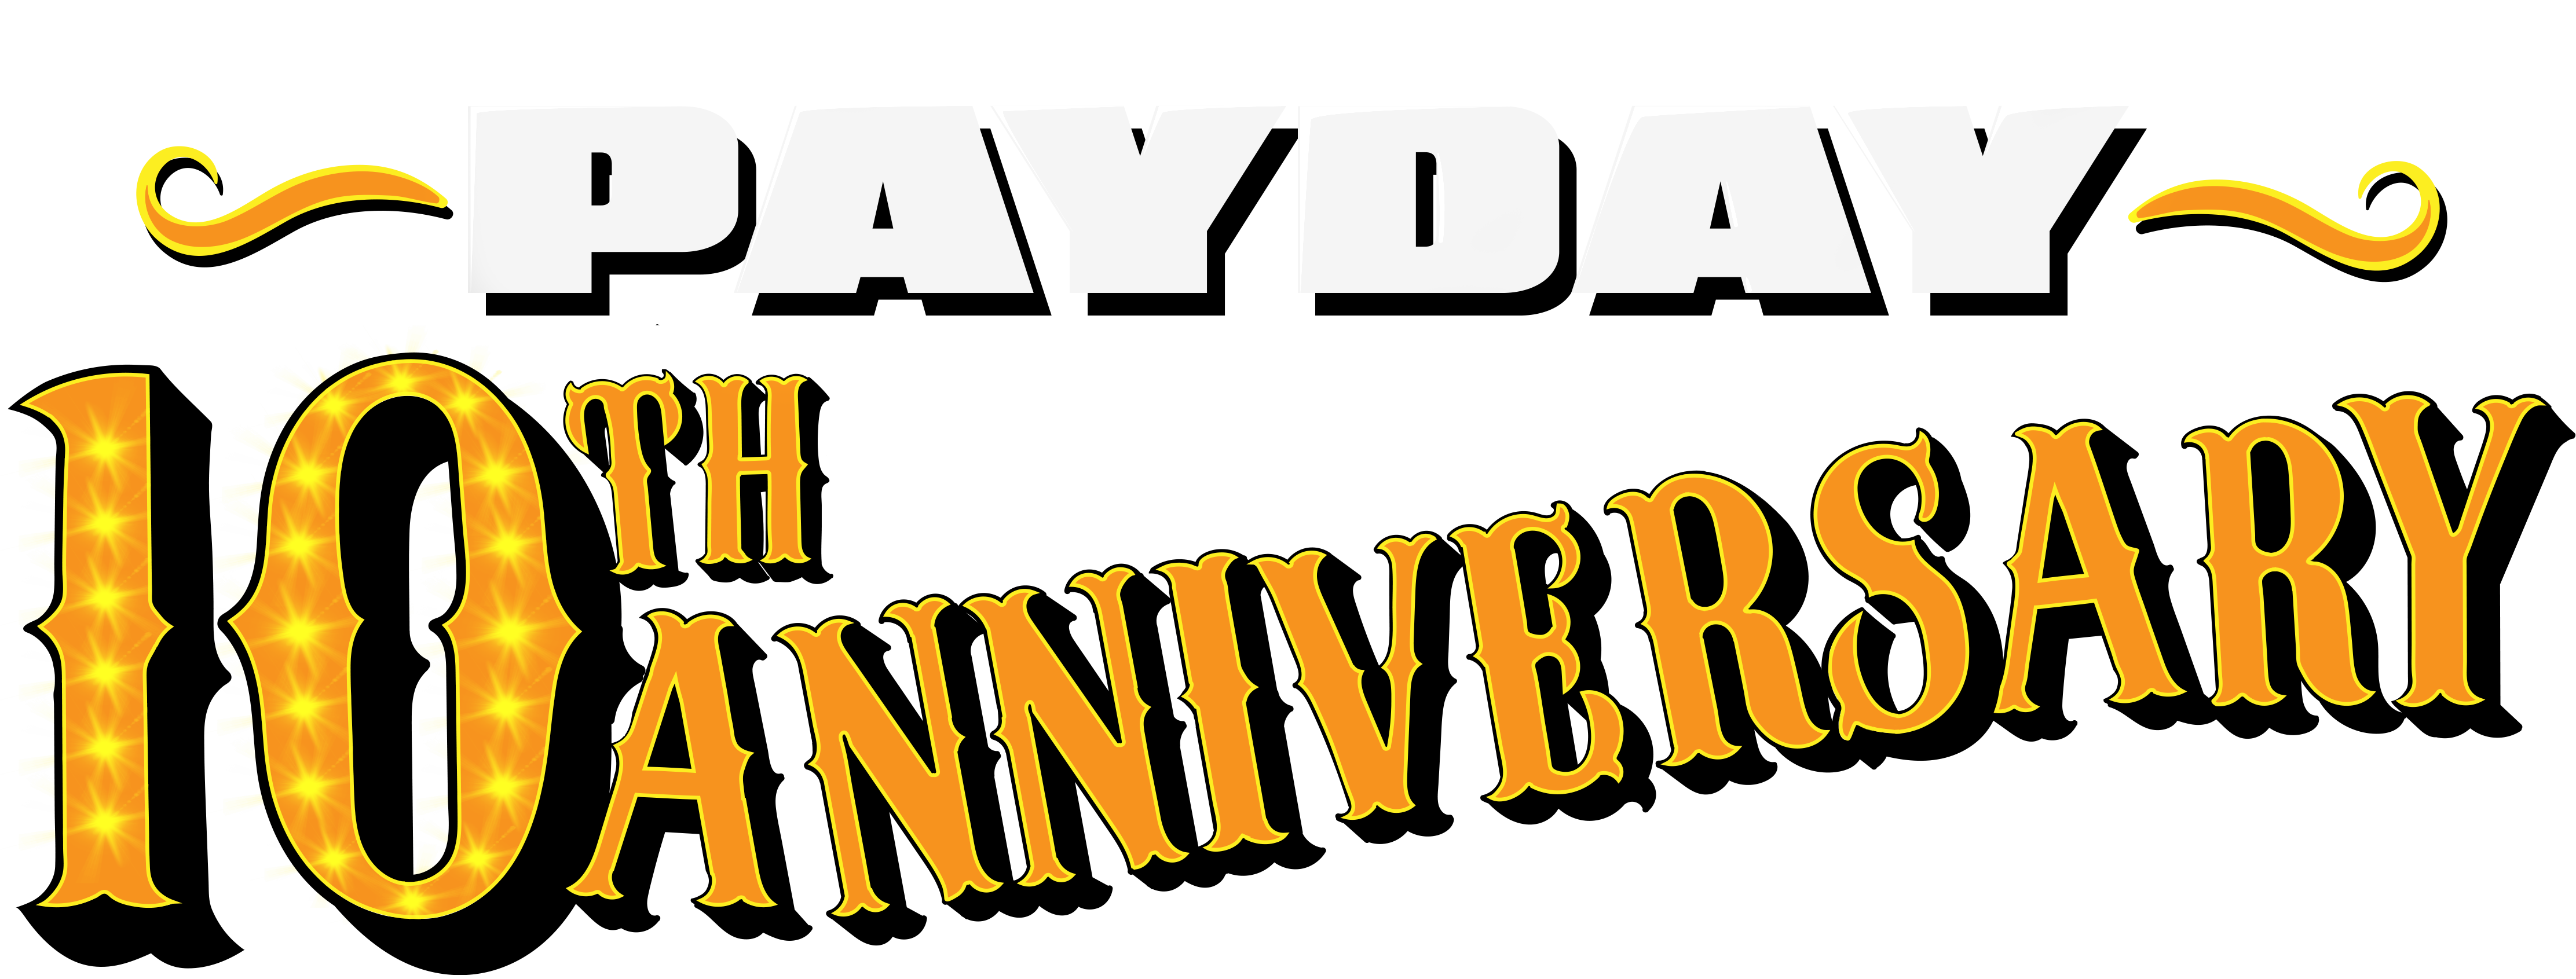 PAYDAY's 10th Anniversary